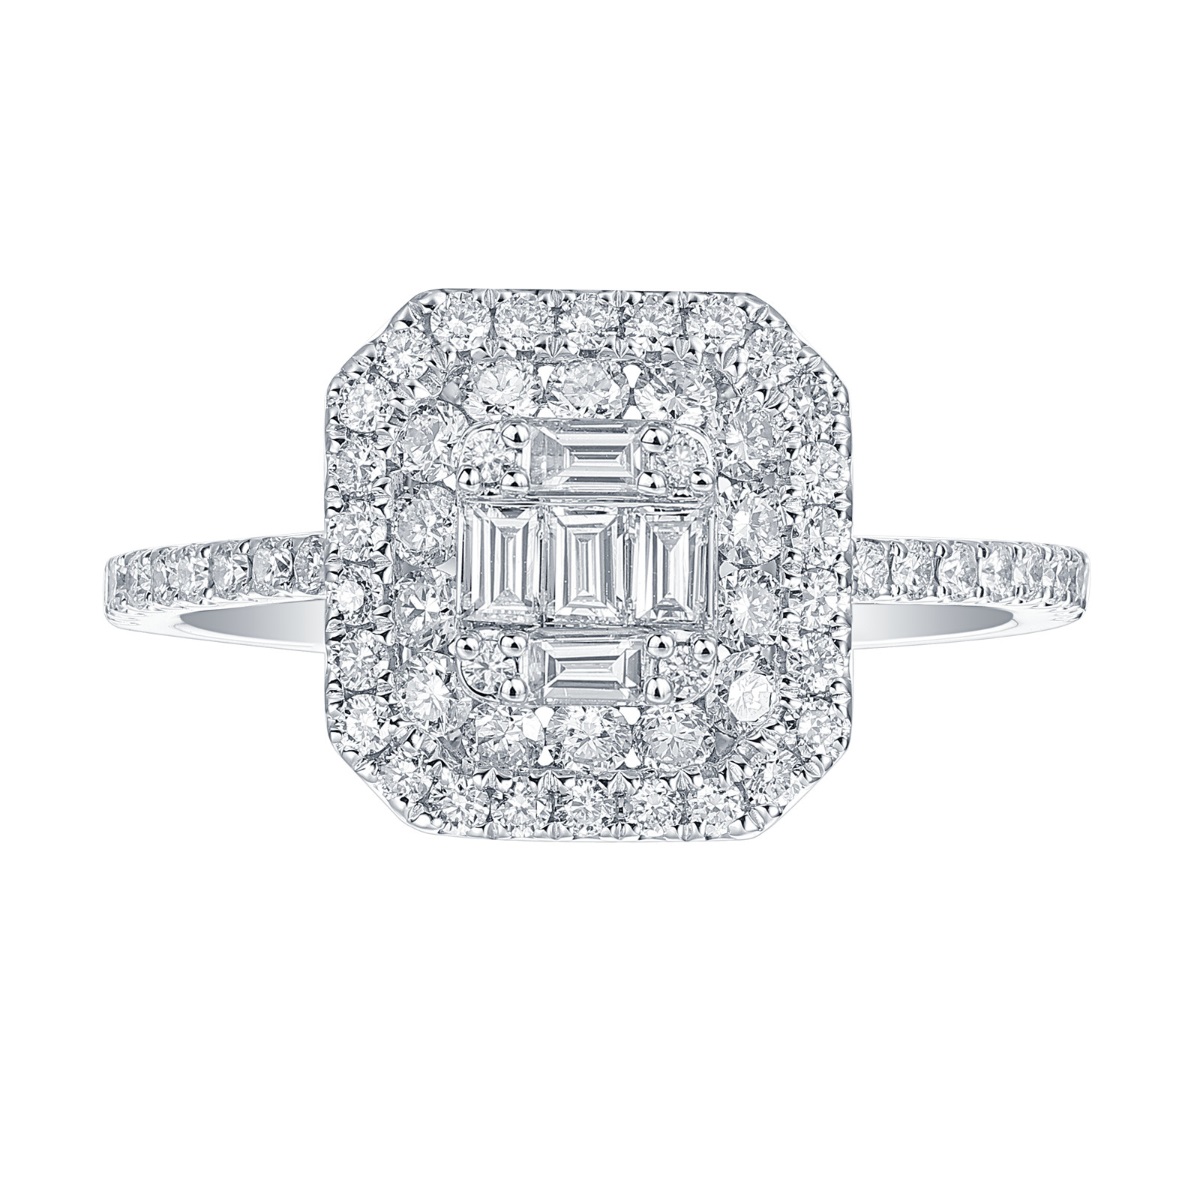 R36790WHT – 18K White Gold Diamond Ring, 0.83 TCW